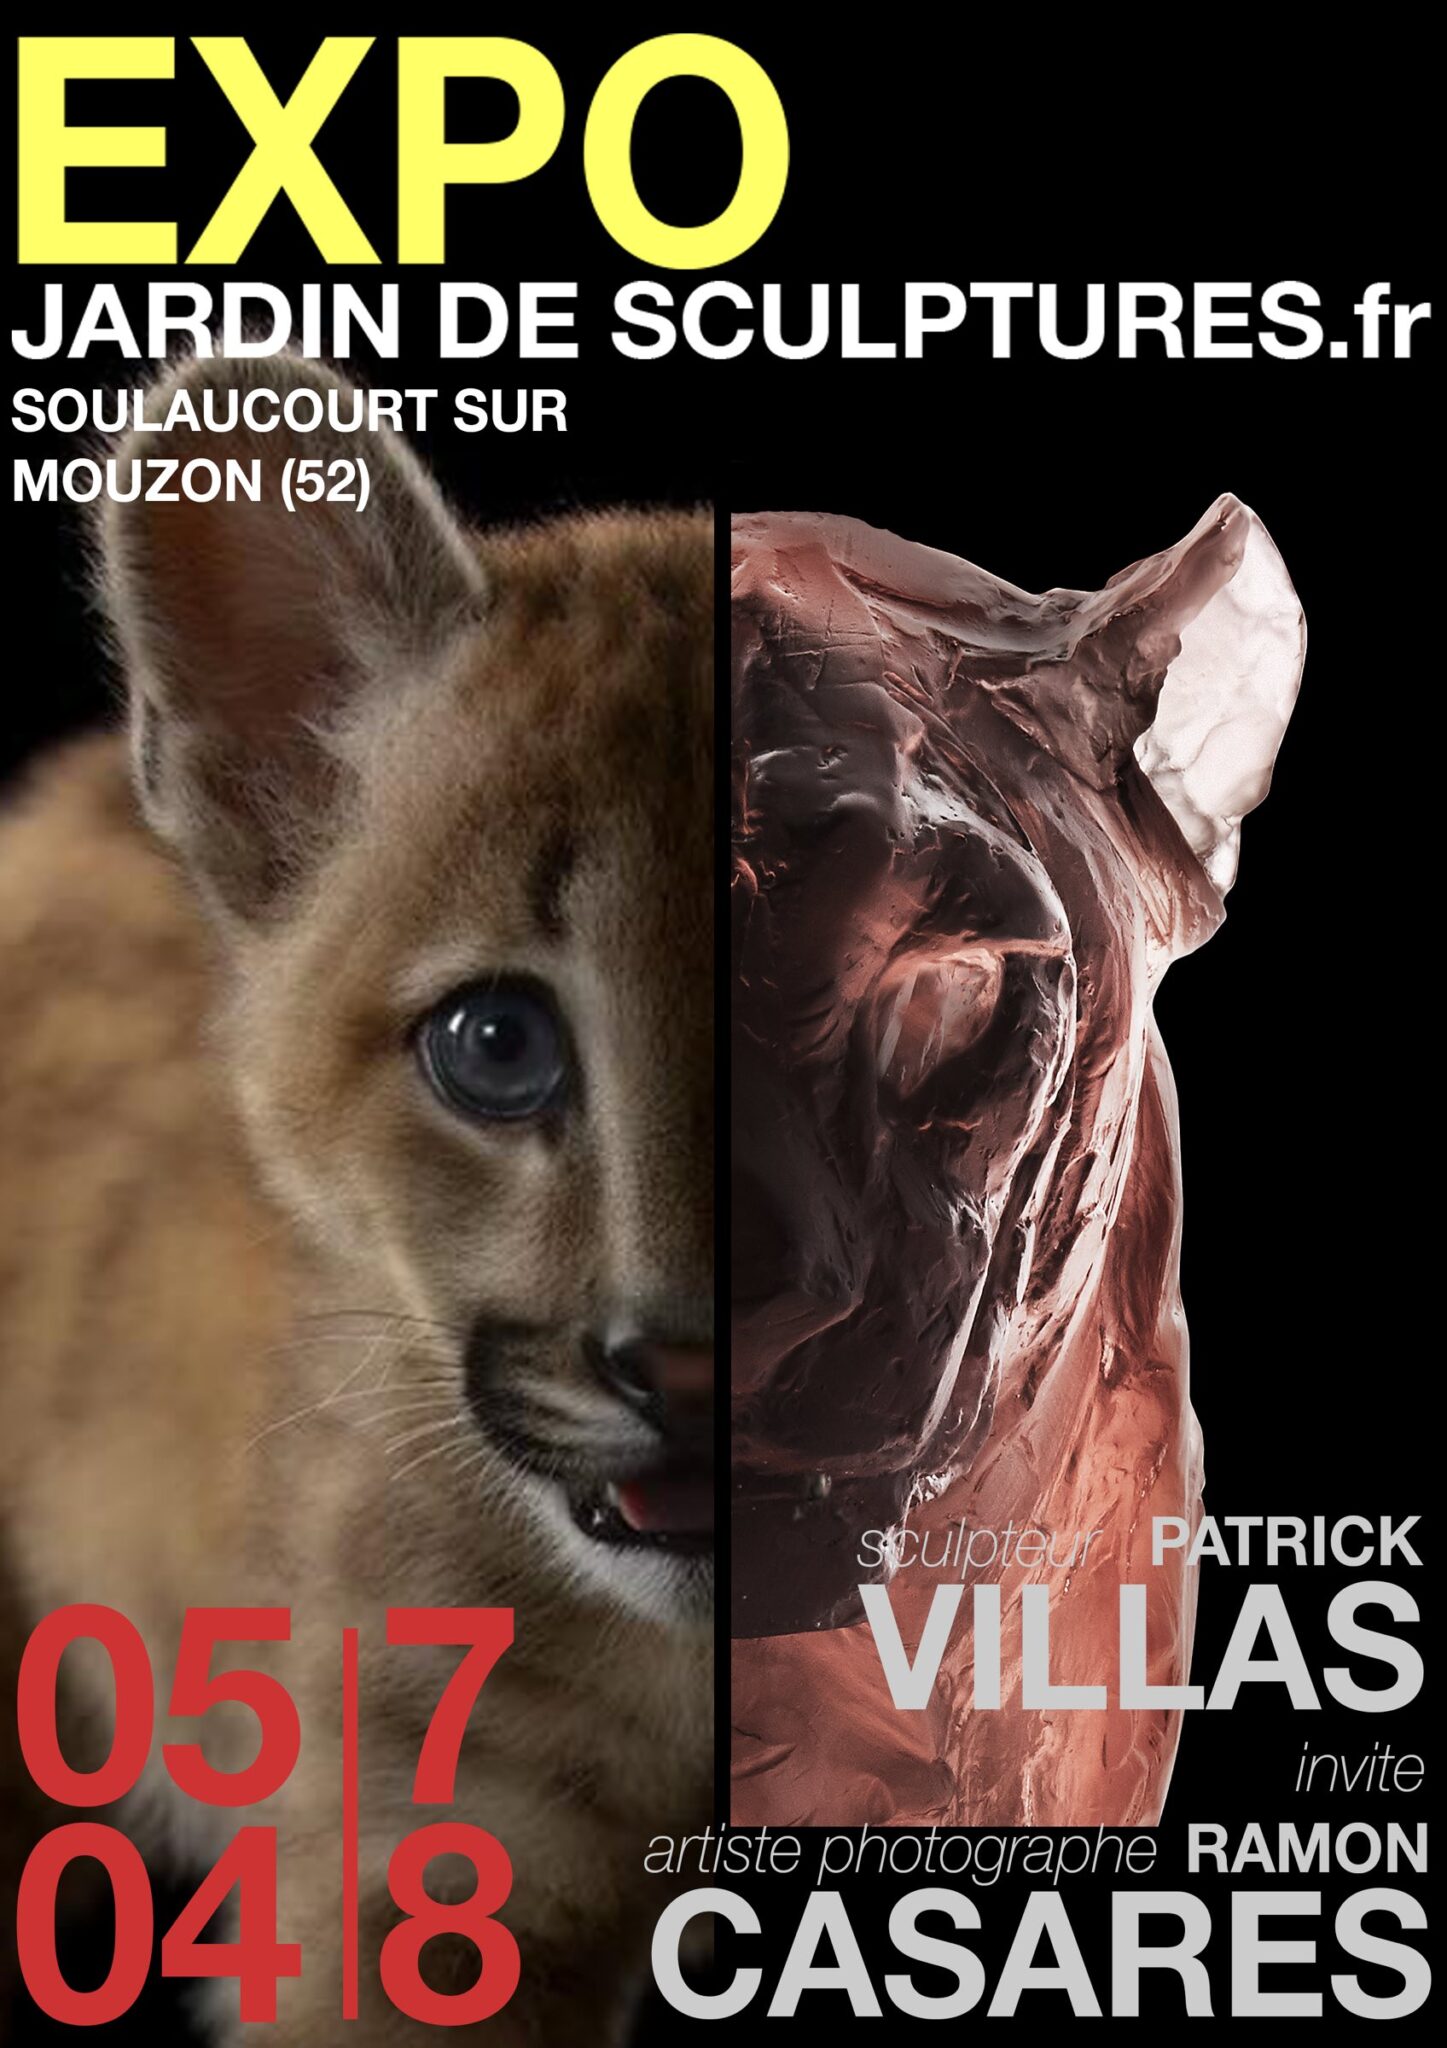 Patrick Villas invite Ramon Casares, deux artistes engagés pour le bien-être animalier